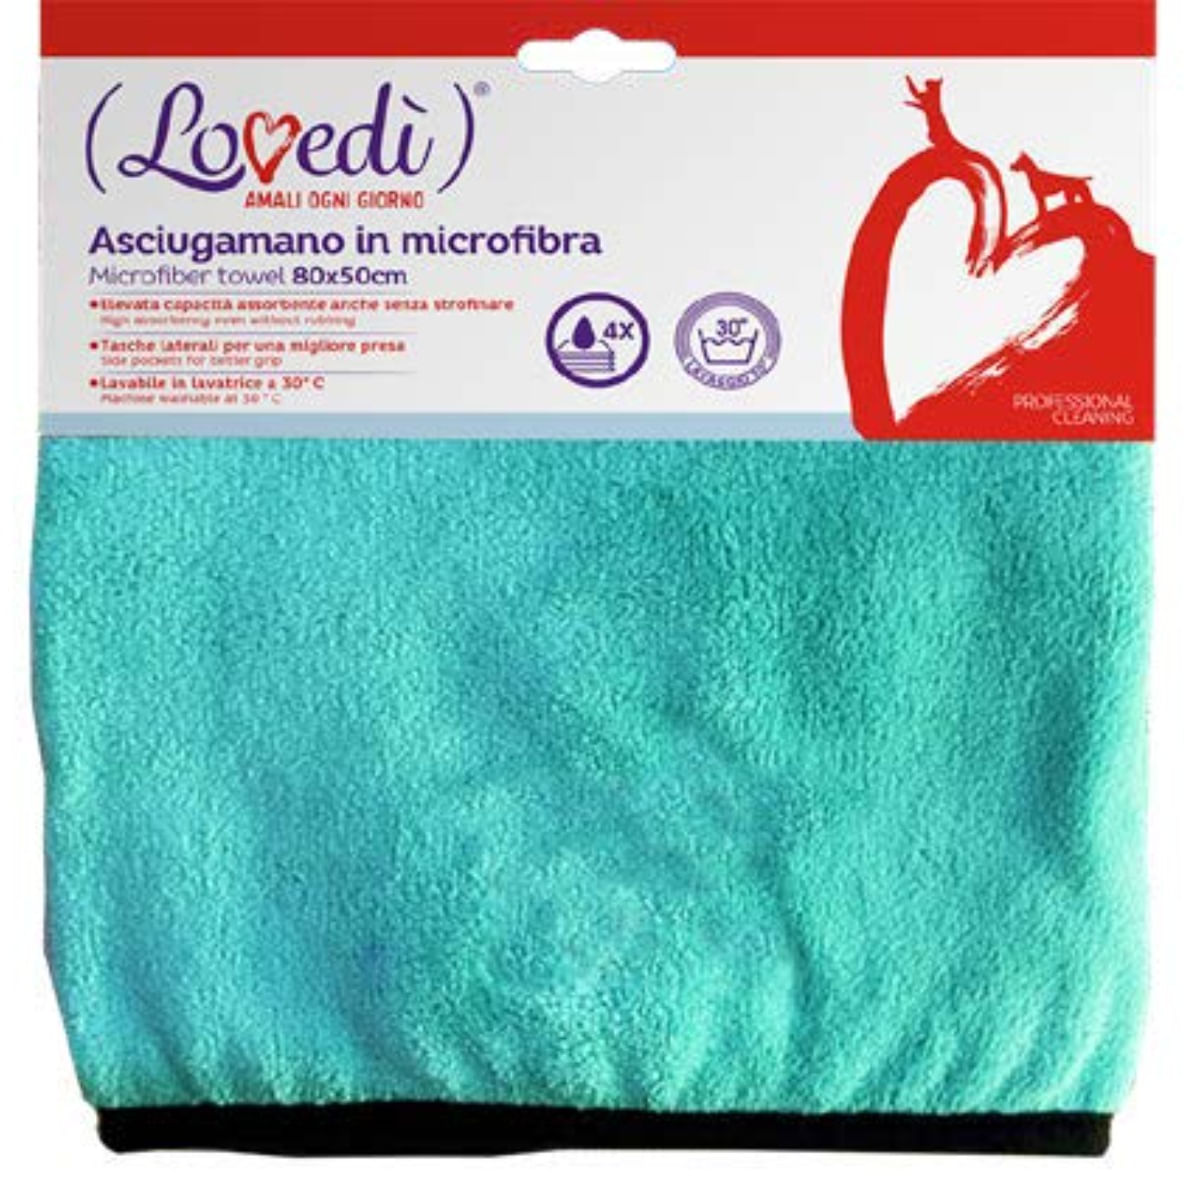 Asciugamano in Microfibra